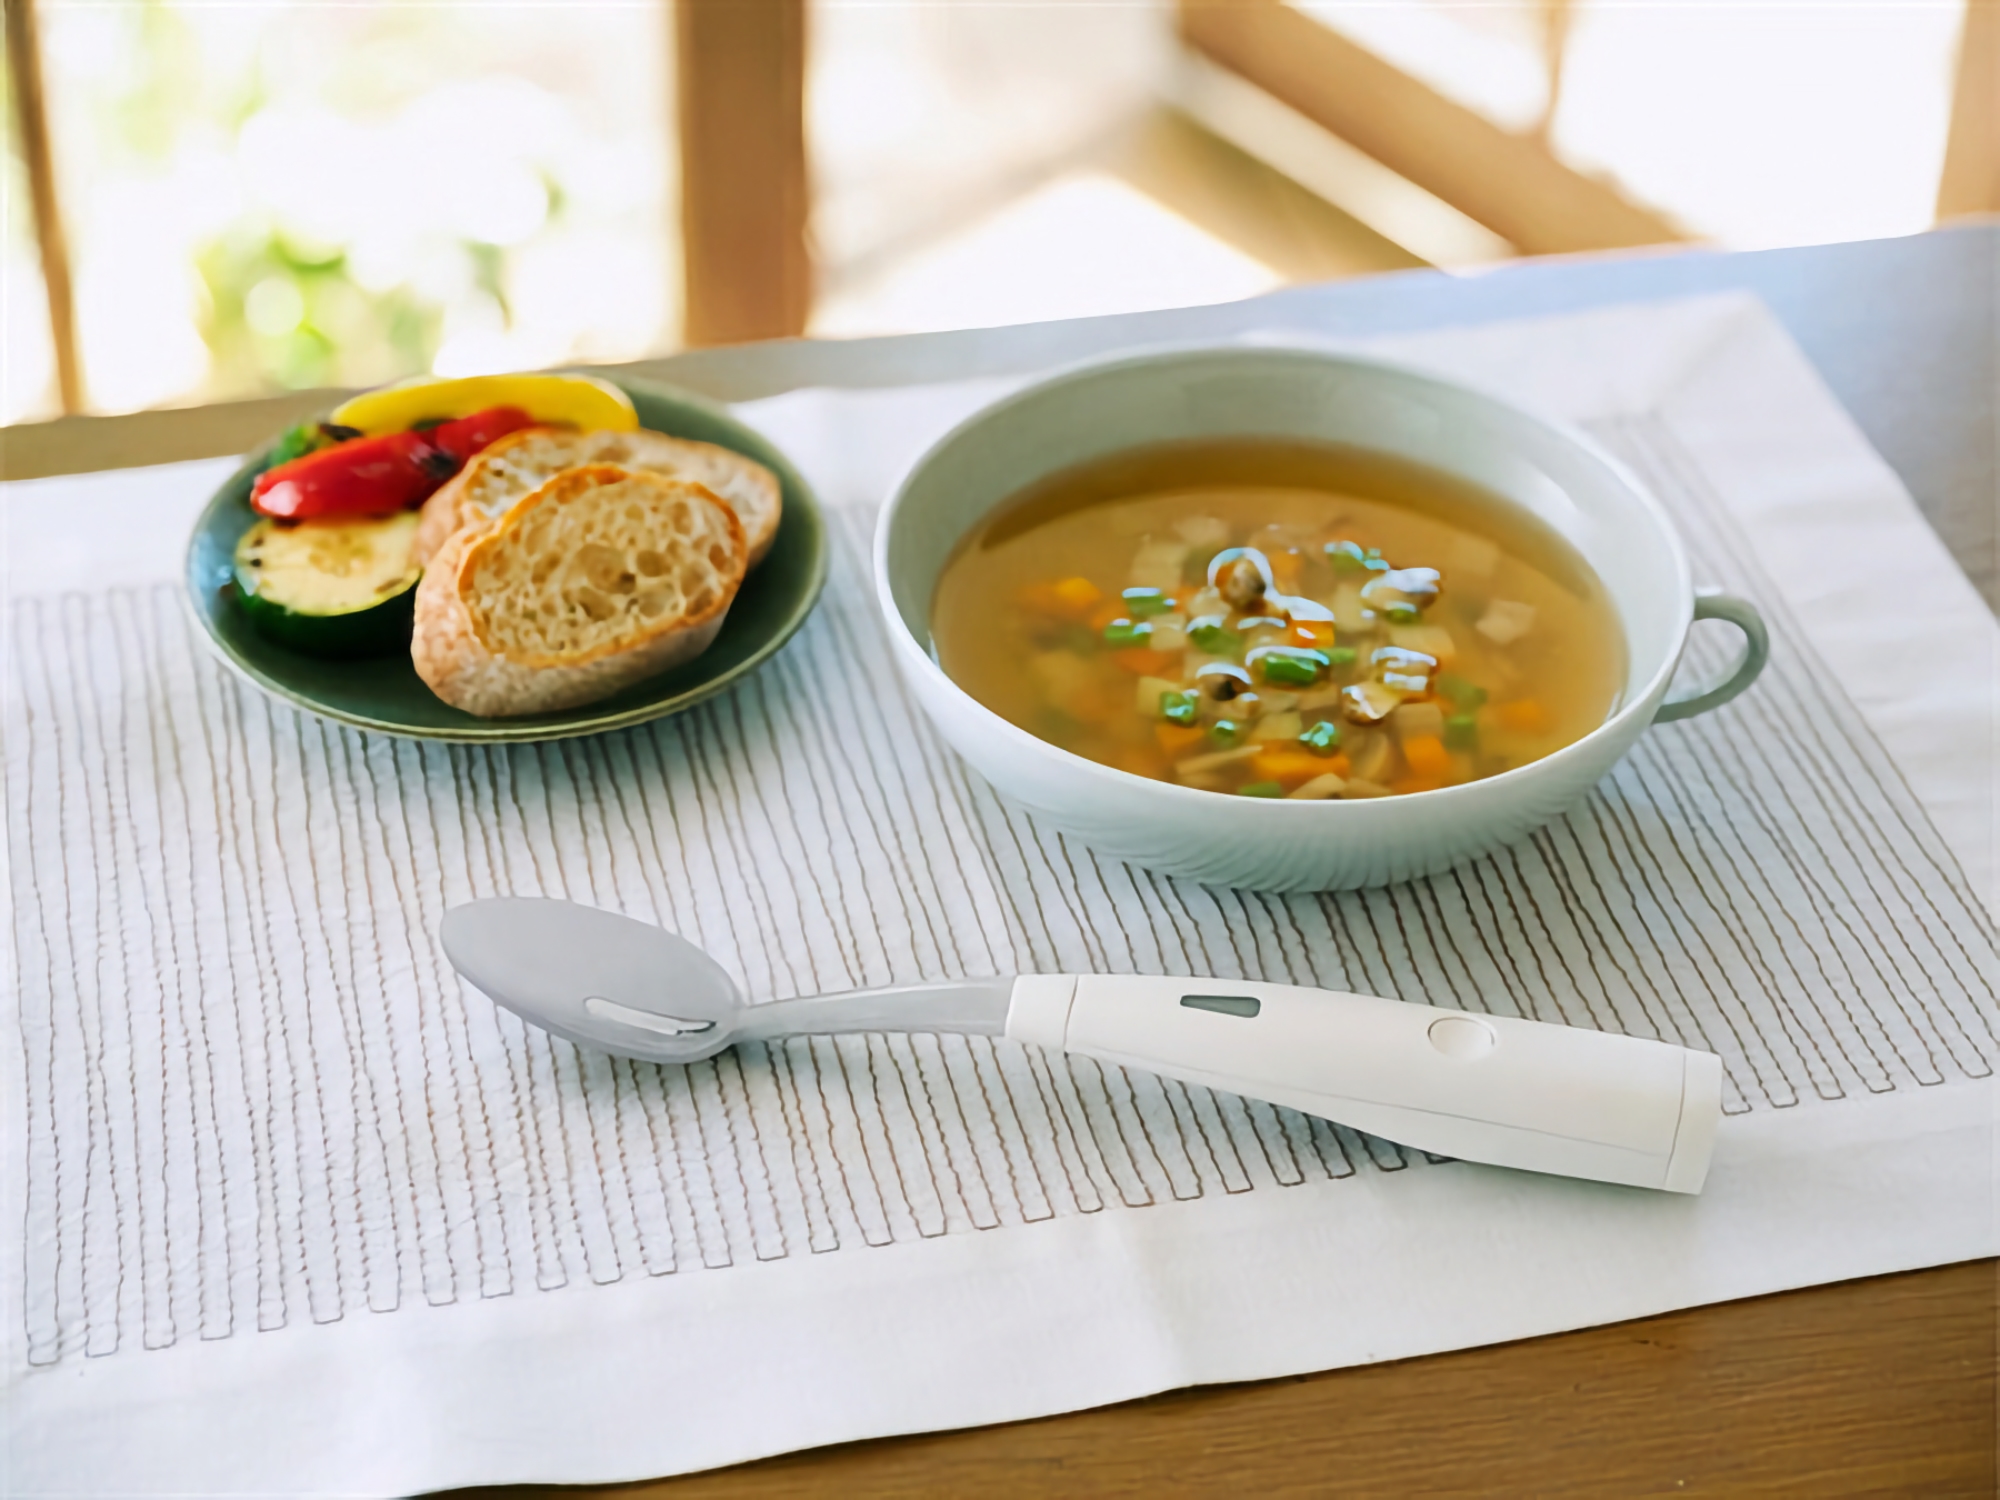 L'azienda giapponese Kirin ha presentato un cucchiaio elettrico in grado di "salare" il cibo